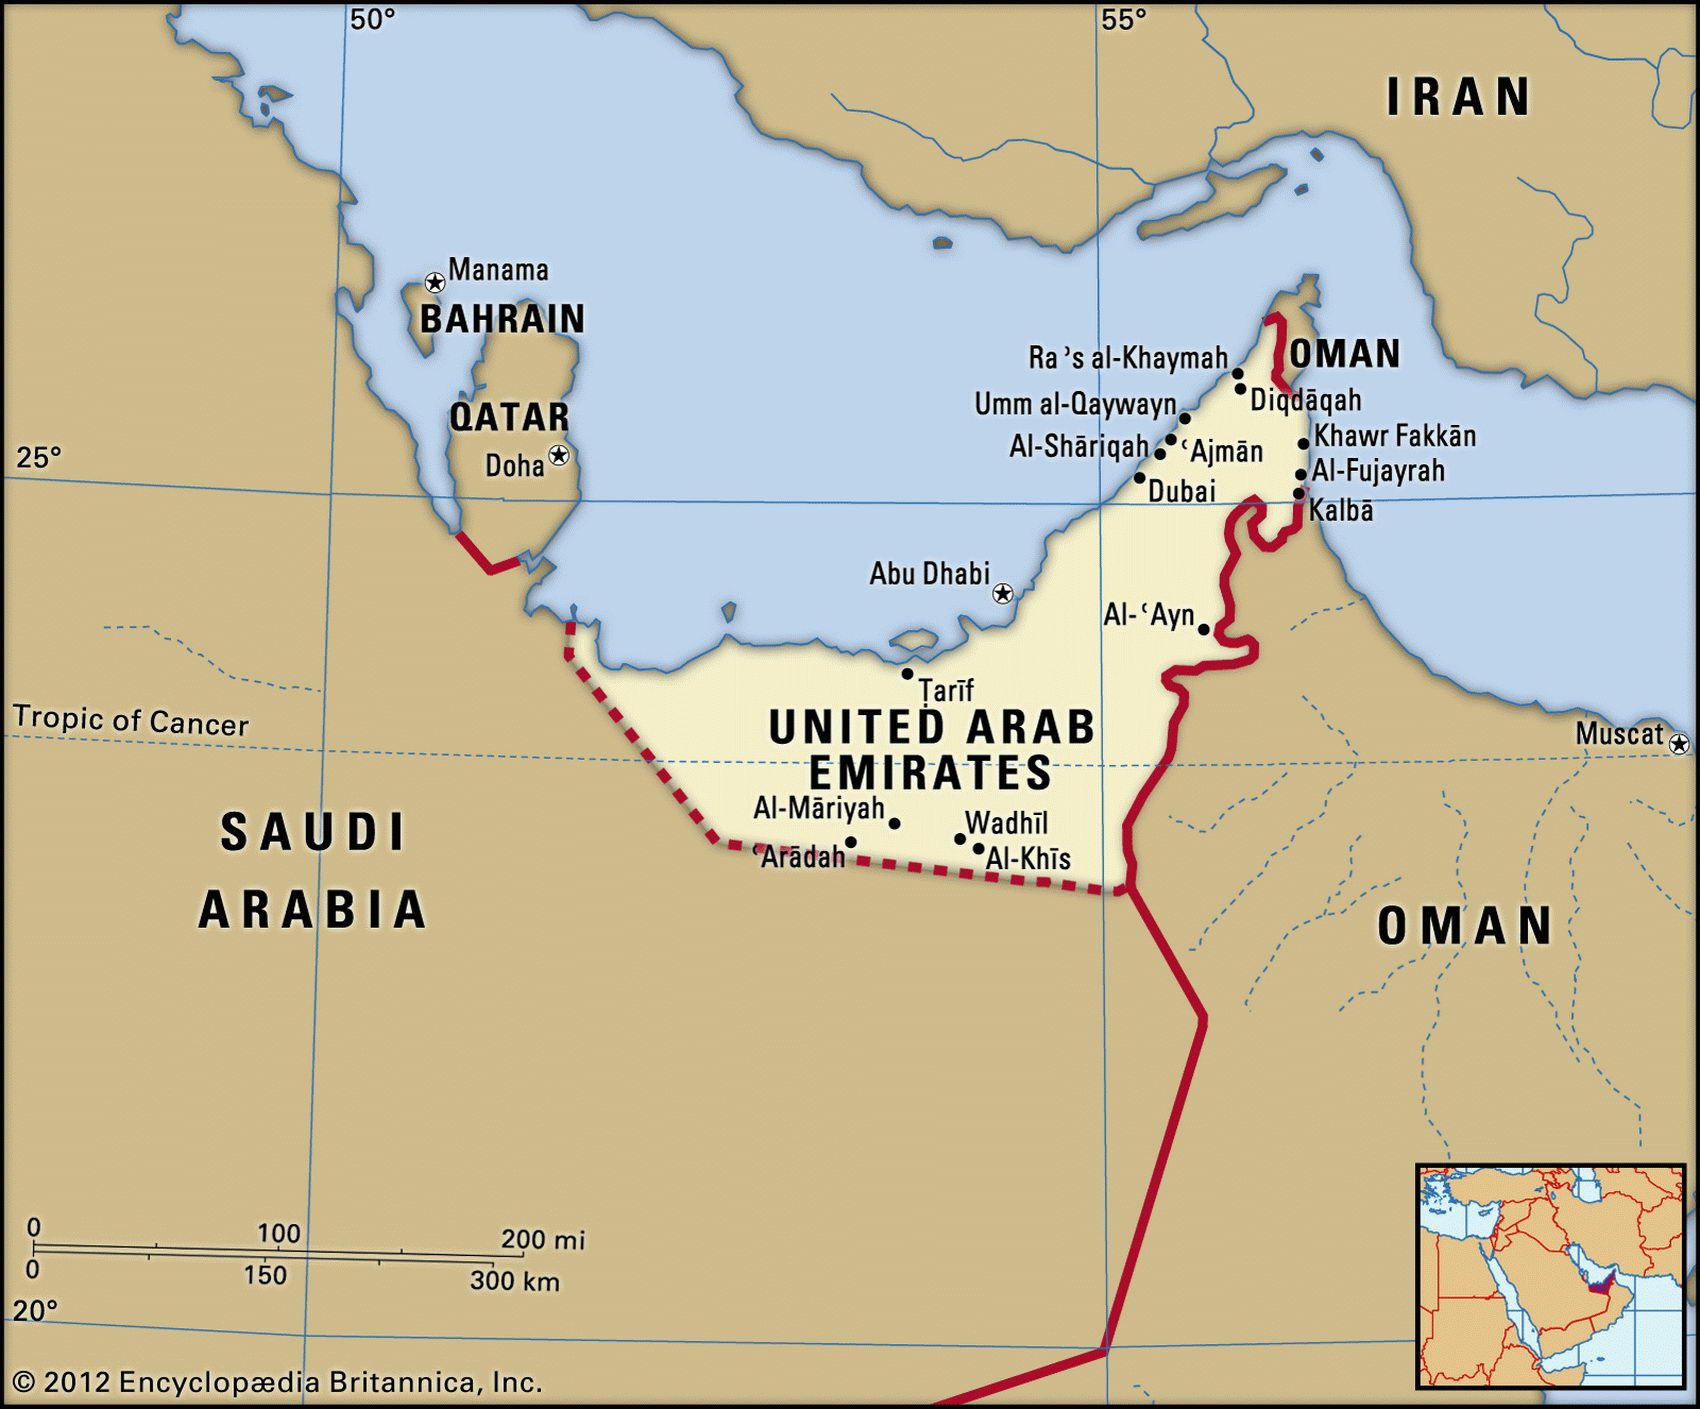 United Arab Emirates Map Of The World - United States Map